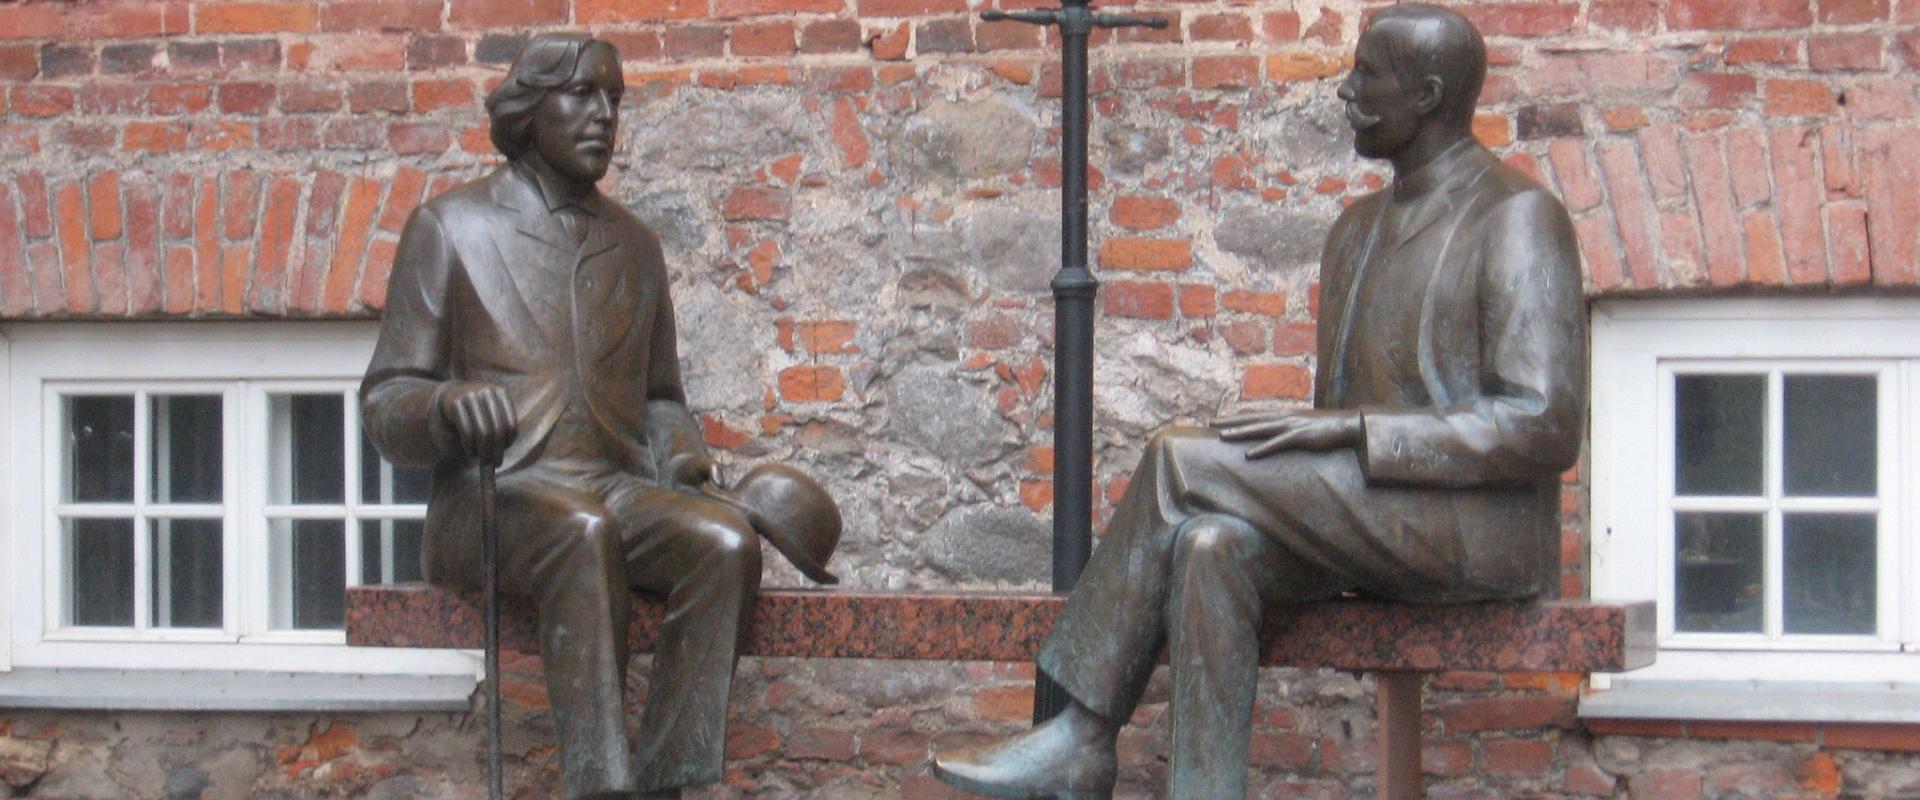 Sculpture Oscar Wilde and Eduard Vilde